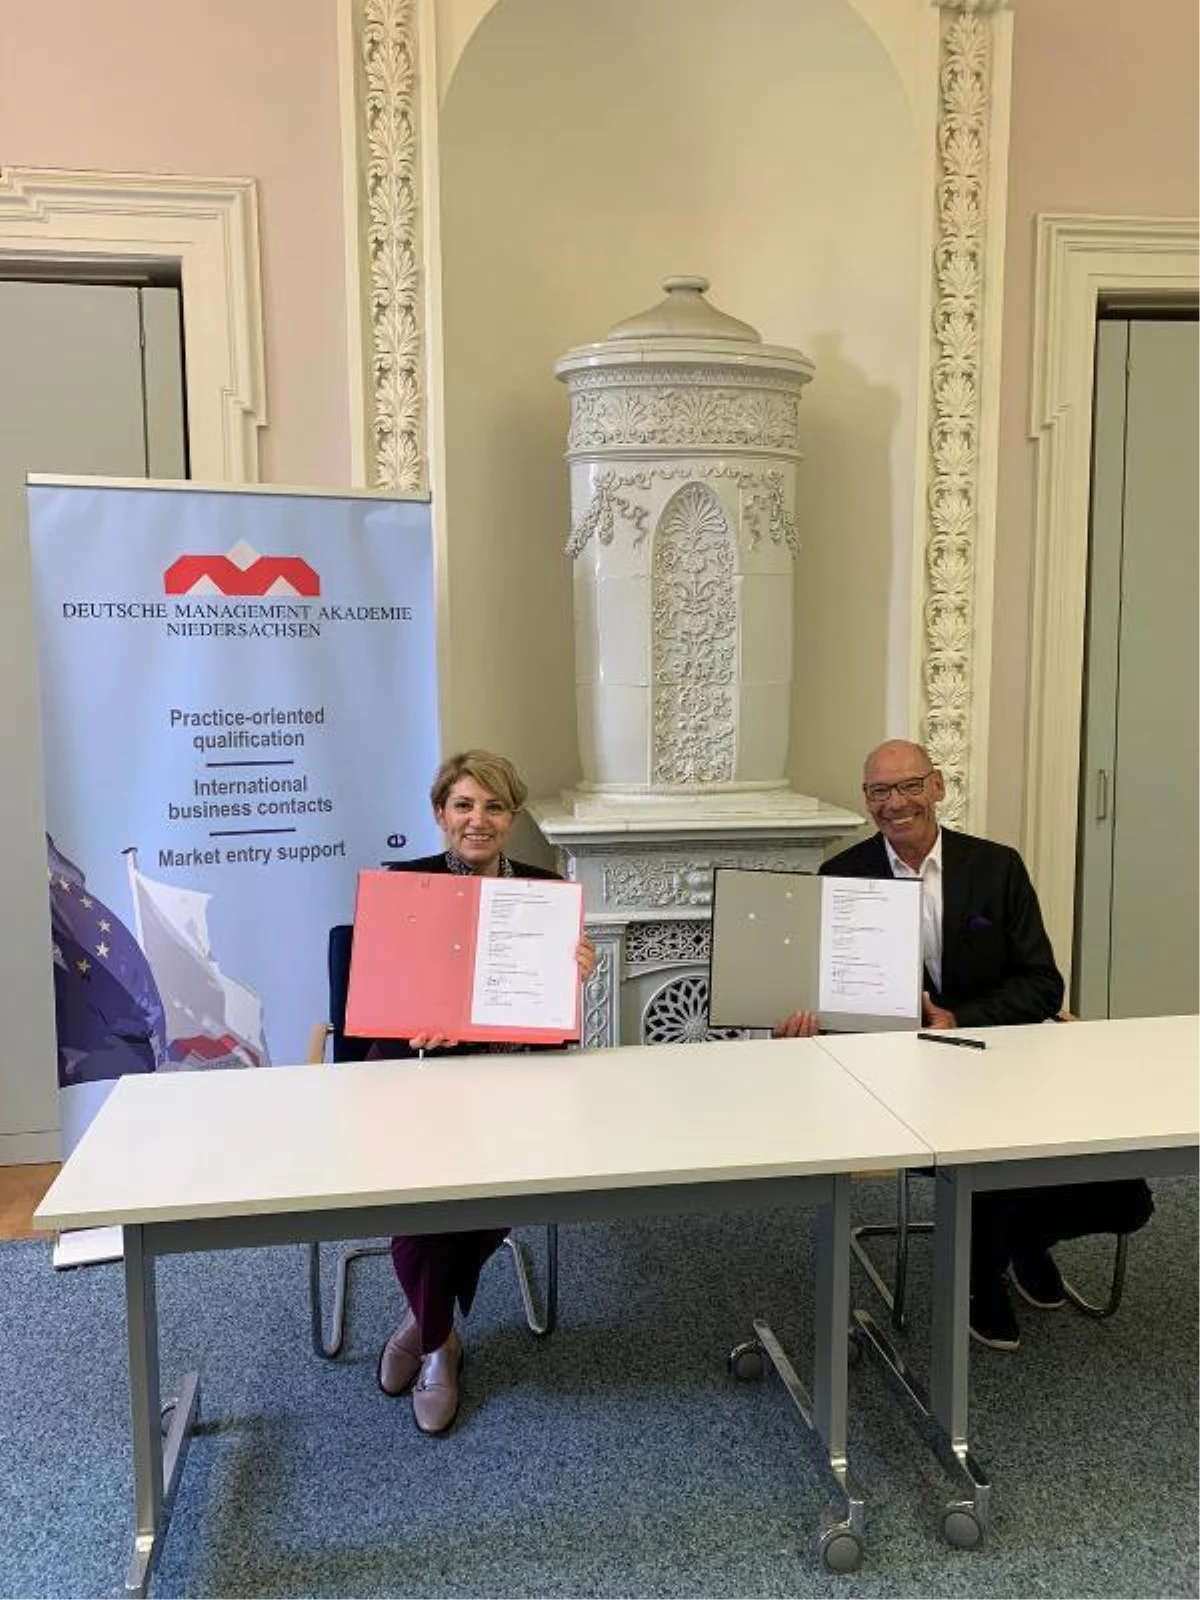 Türk üniversitesi Alman yönetim akademisi ile iş birliği protokolü imzaladı